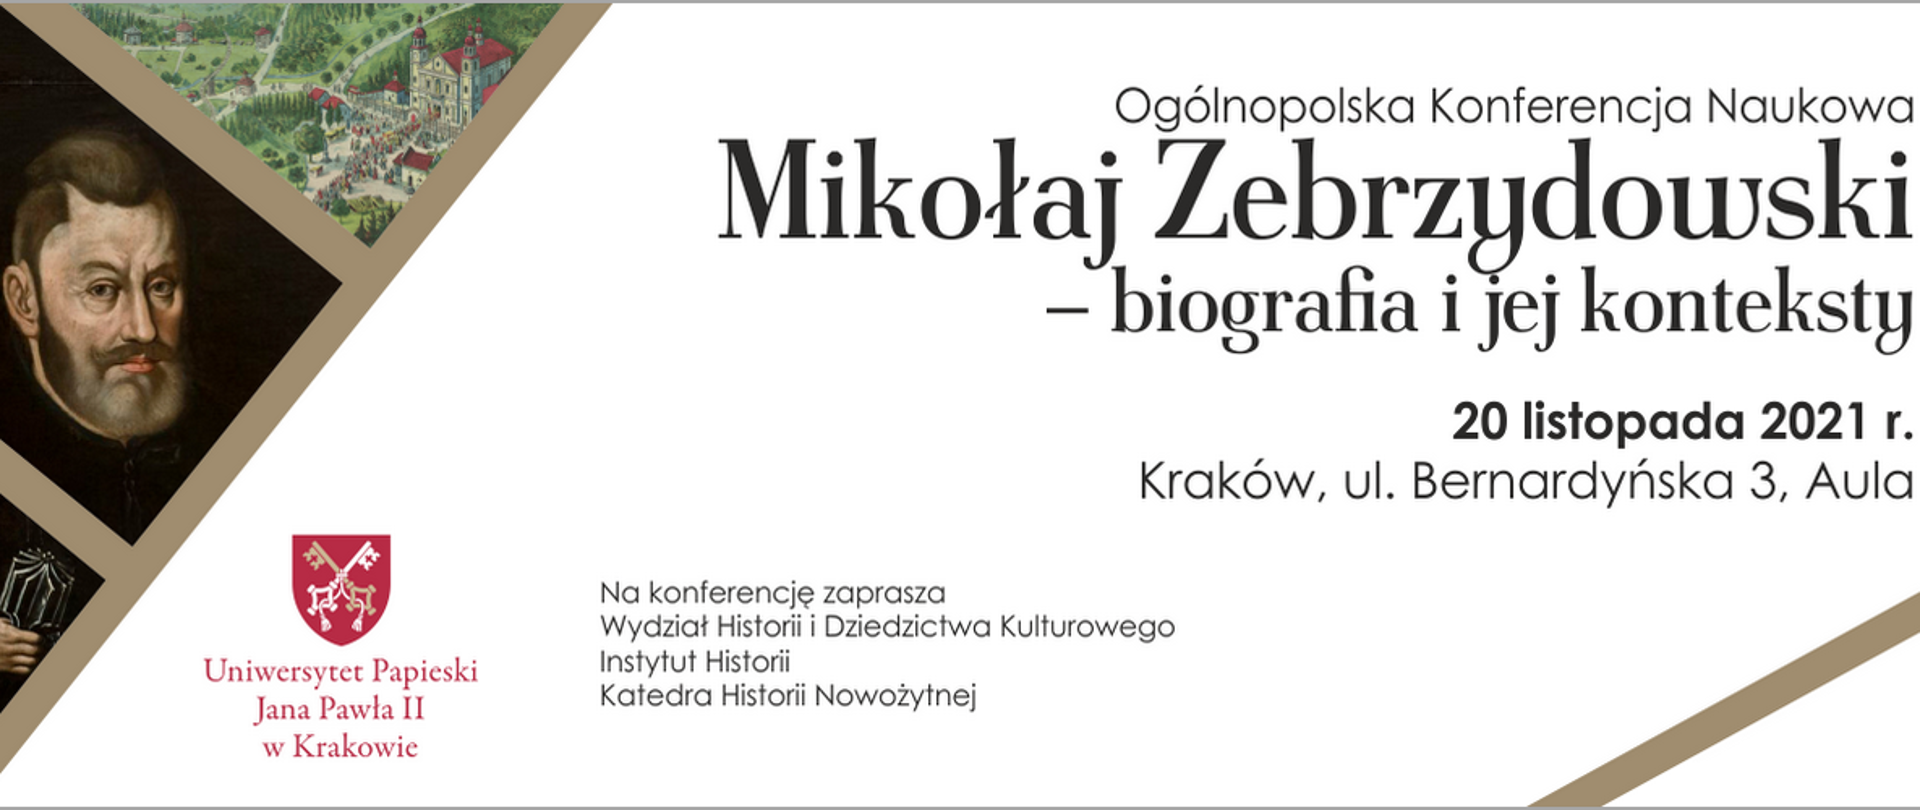 Plansza informacyjna - Ogólnopolska Konferencja Naukowa „Mikołaj Zebrzydowski – biografia i jej konteksty” 